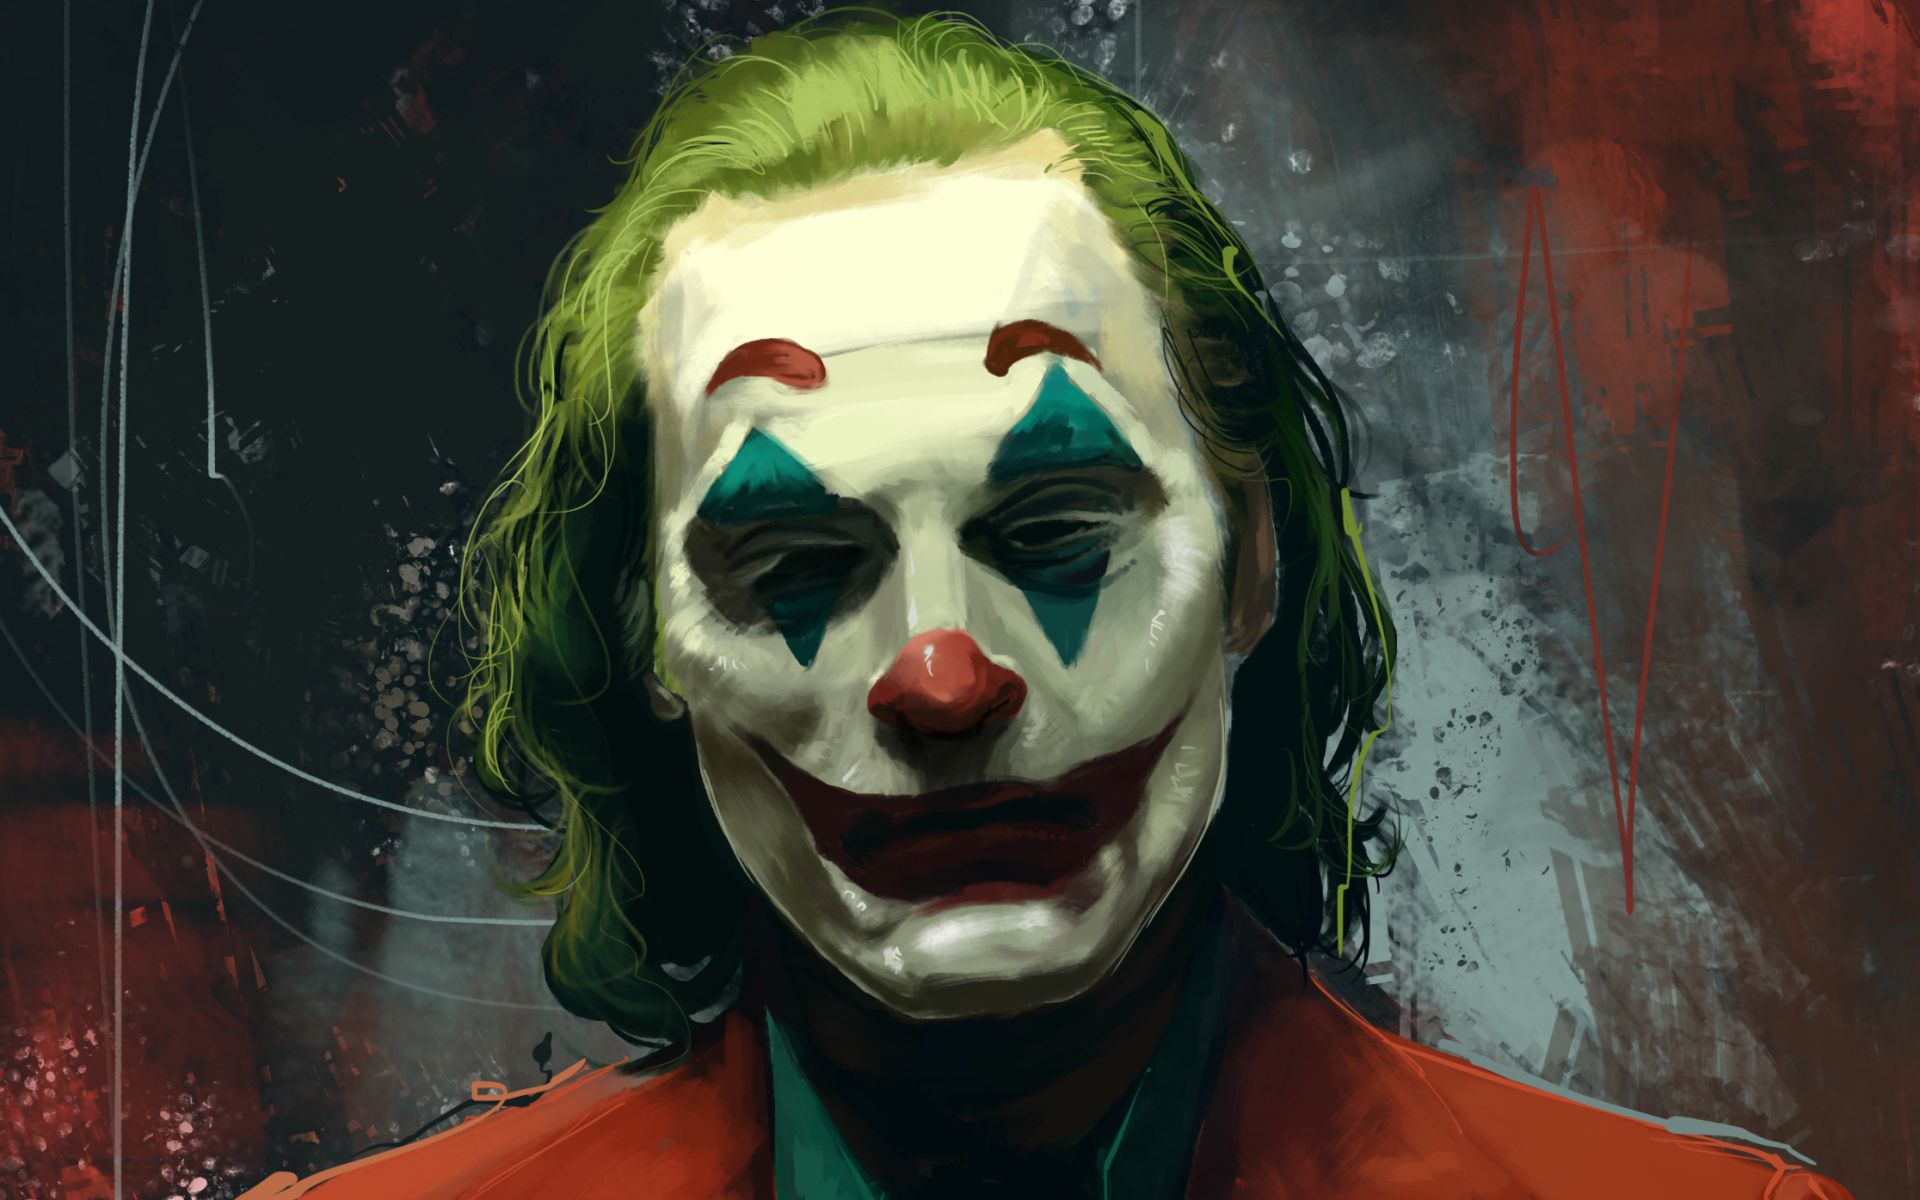 New Joaquin Phoenix Joker Art Wallpapers